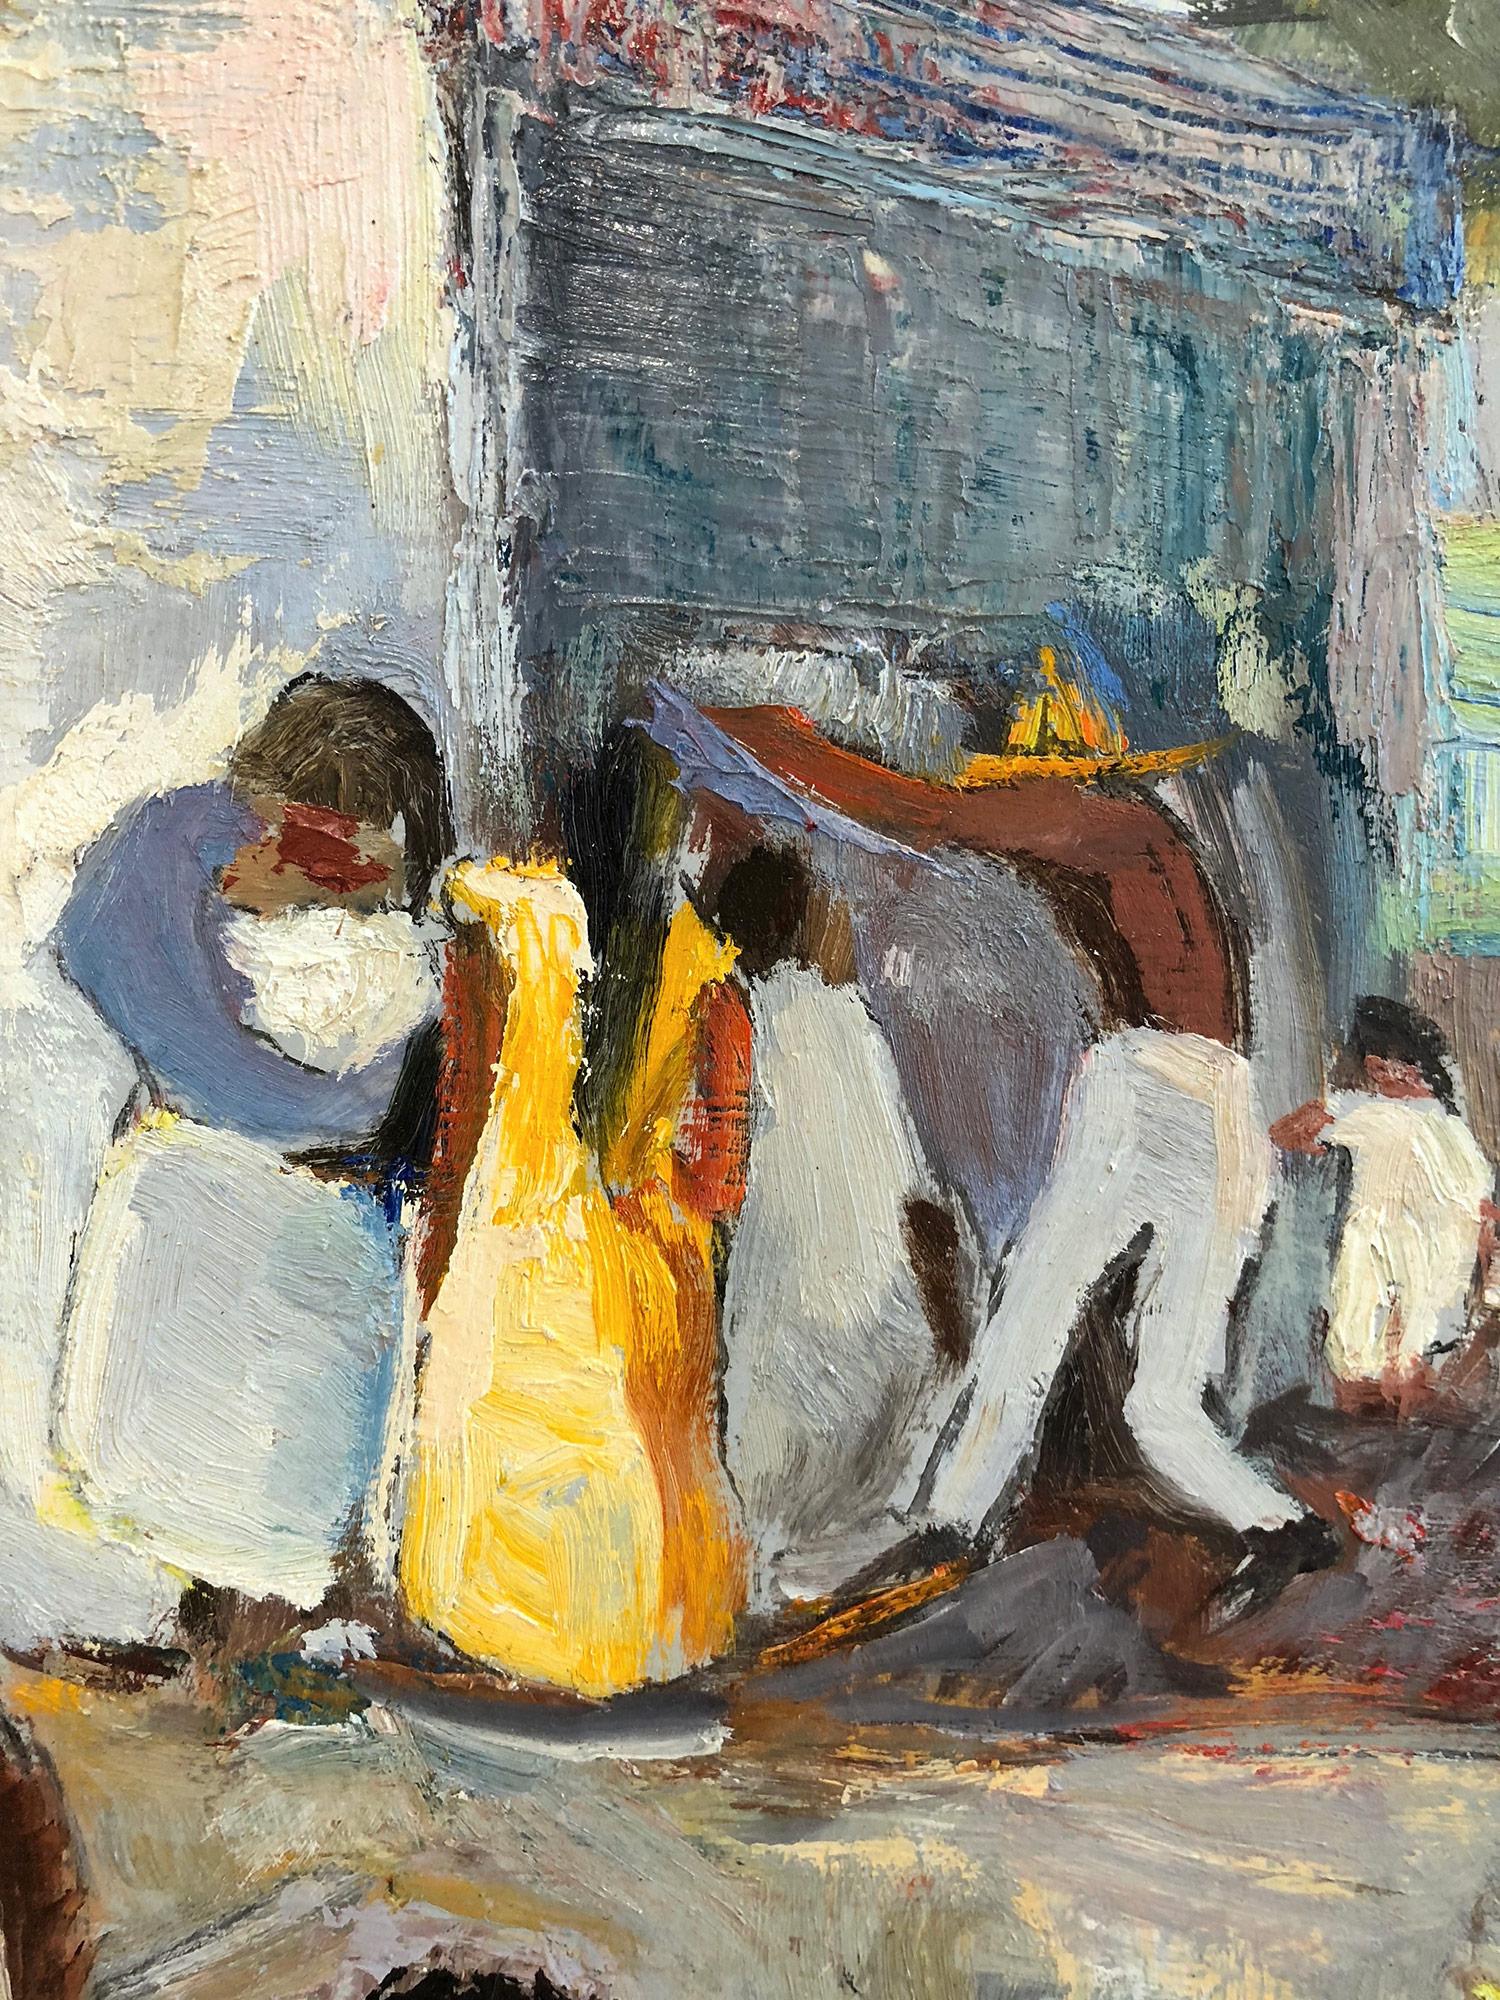 Ein starkes modernistisches Ölgemälde, das 1971 von dem russischen Maler Michael Baxte gemalt wurde. Dieses Werk, das vor allem für seine abstrahierten Figuren auf der Leinwand oder Straßenszenen bekannt ist, ist eine wunderbare Darstellung seiner